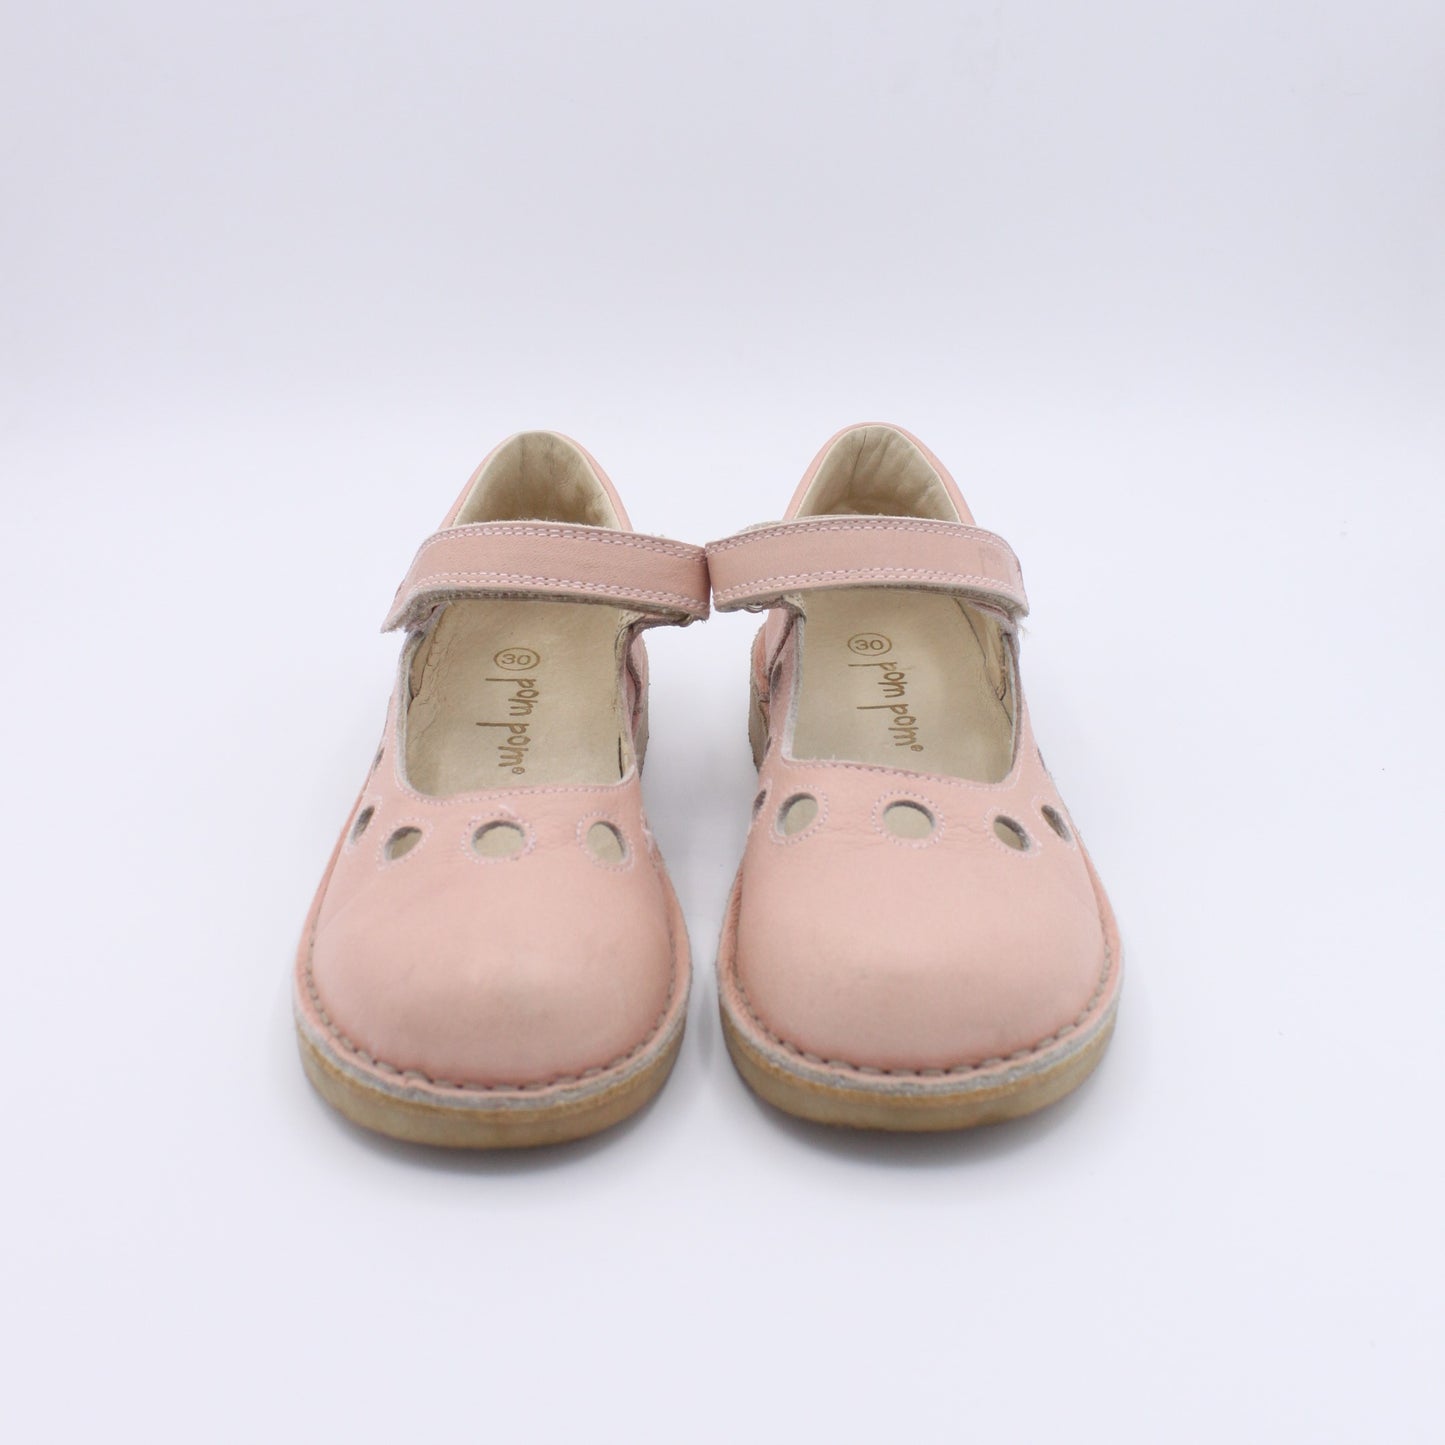 POMPOM Pre-loved Shoes (EU30)